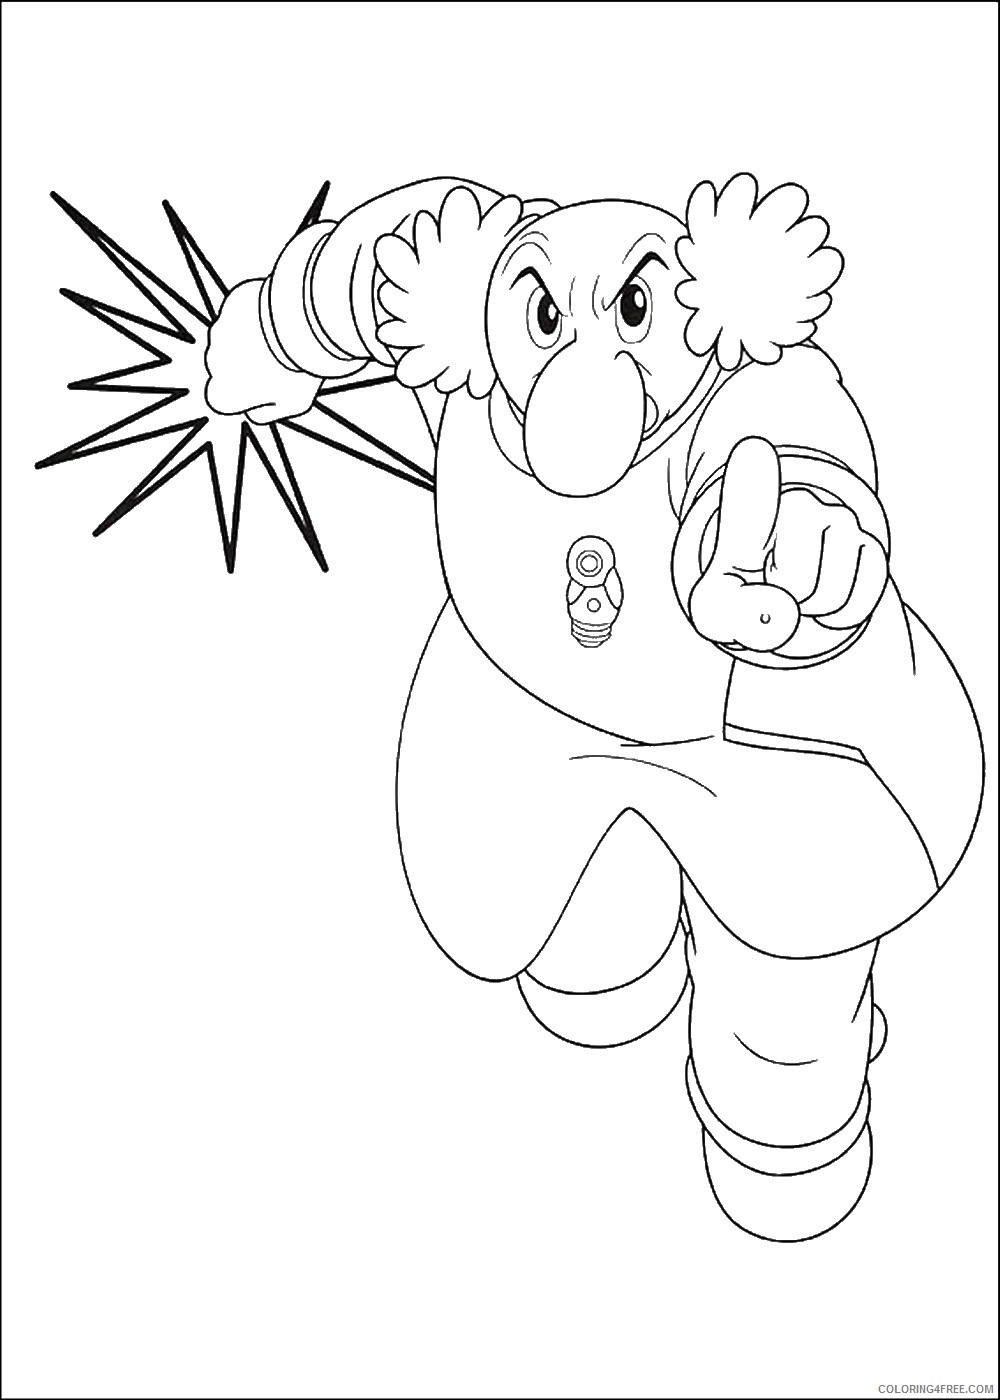 Astro Boy Coloring Pages Cartoons astro_boy_cl_06 Printable 2020 0711 Coloring4free